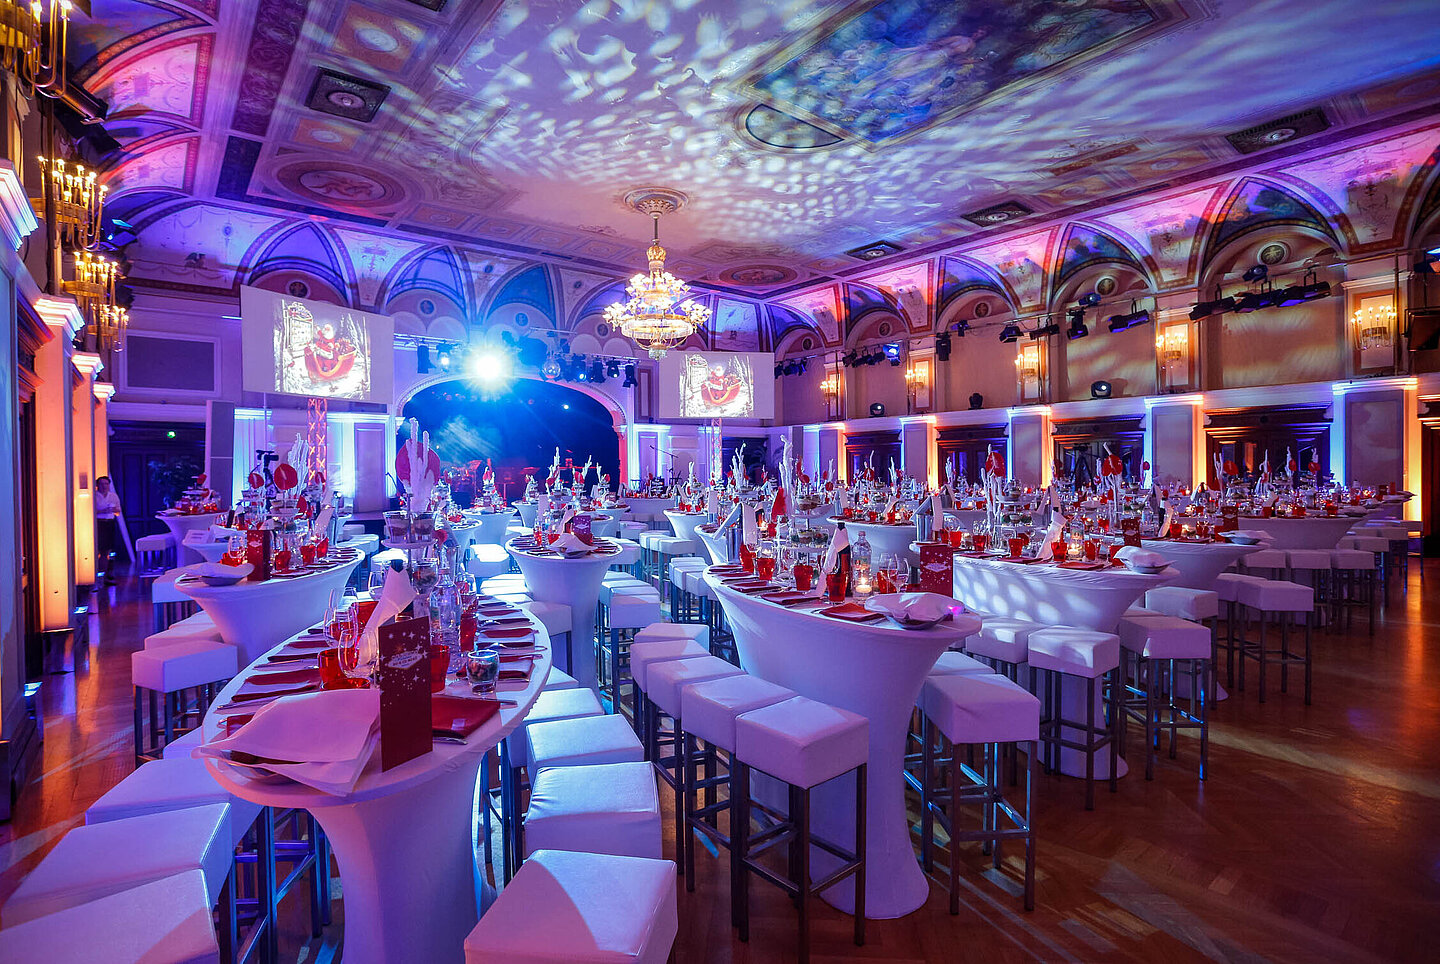 Festsaal im stimmungsvollen Licht rosa und blau